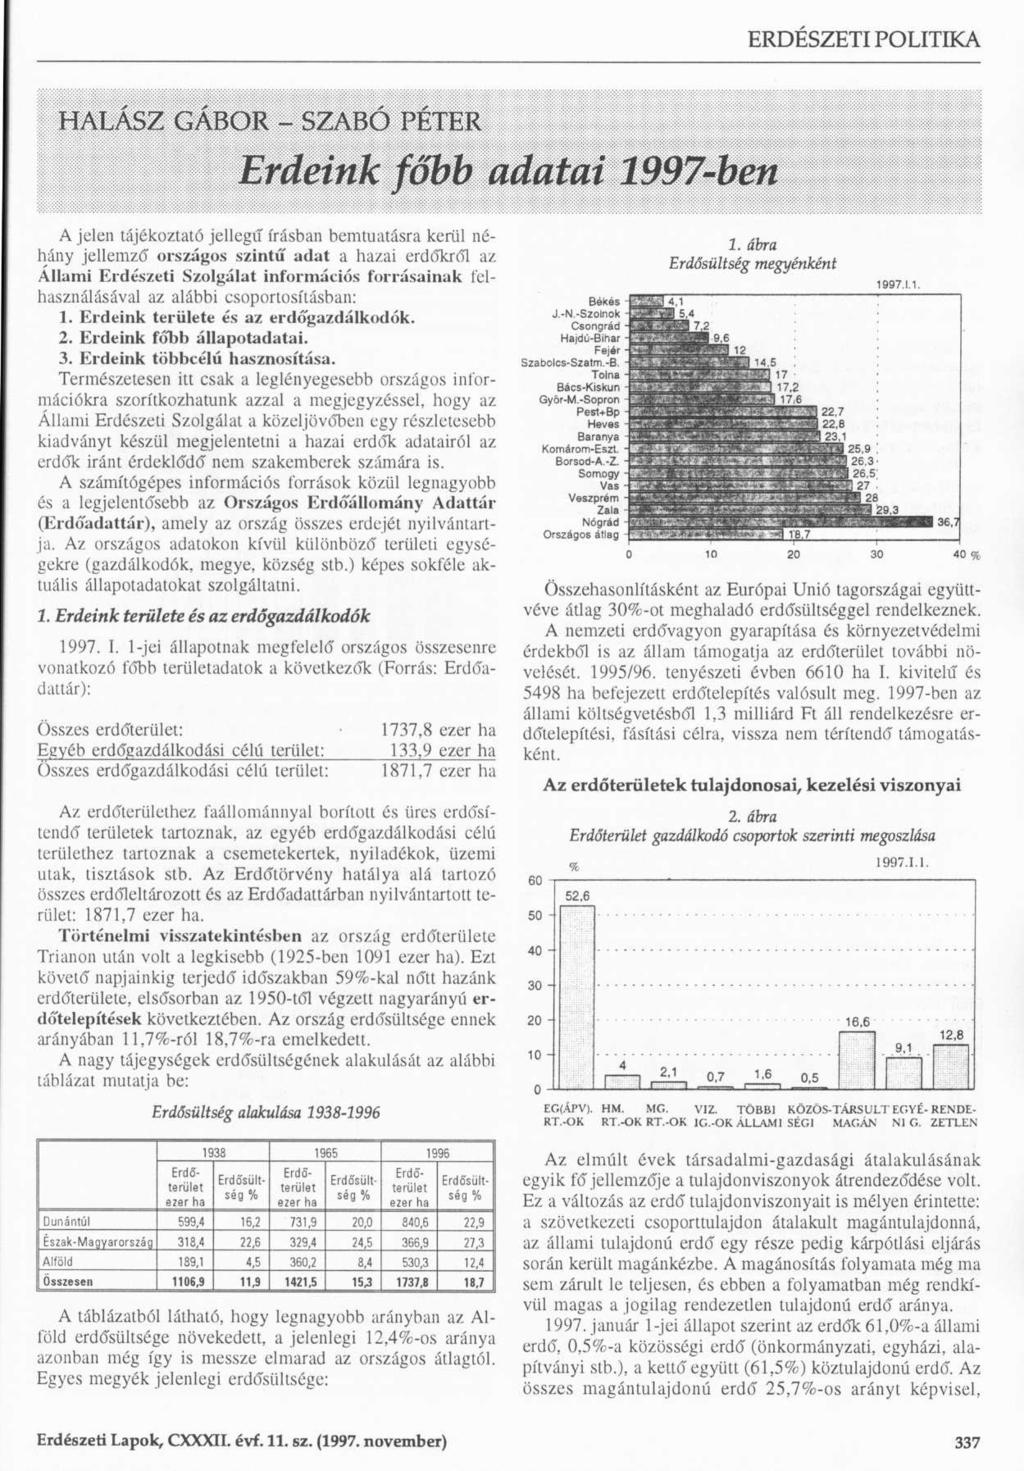 HALASZ GÁBOR - SZABÓ PÉTER Erdeink főbb adatai 1997-ben A jelen tájékoztató jellegű írásban bemutatásra kerül néhány jellemző országos szintű adat a hazai erdőkről az Állami Erdészeti Szolgálat